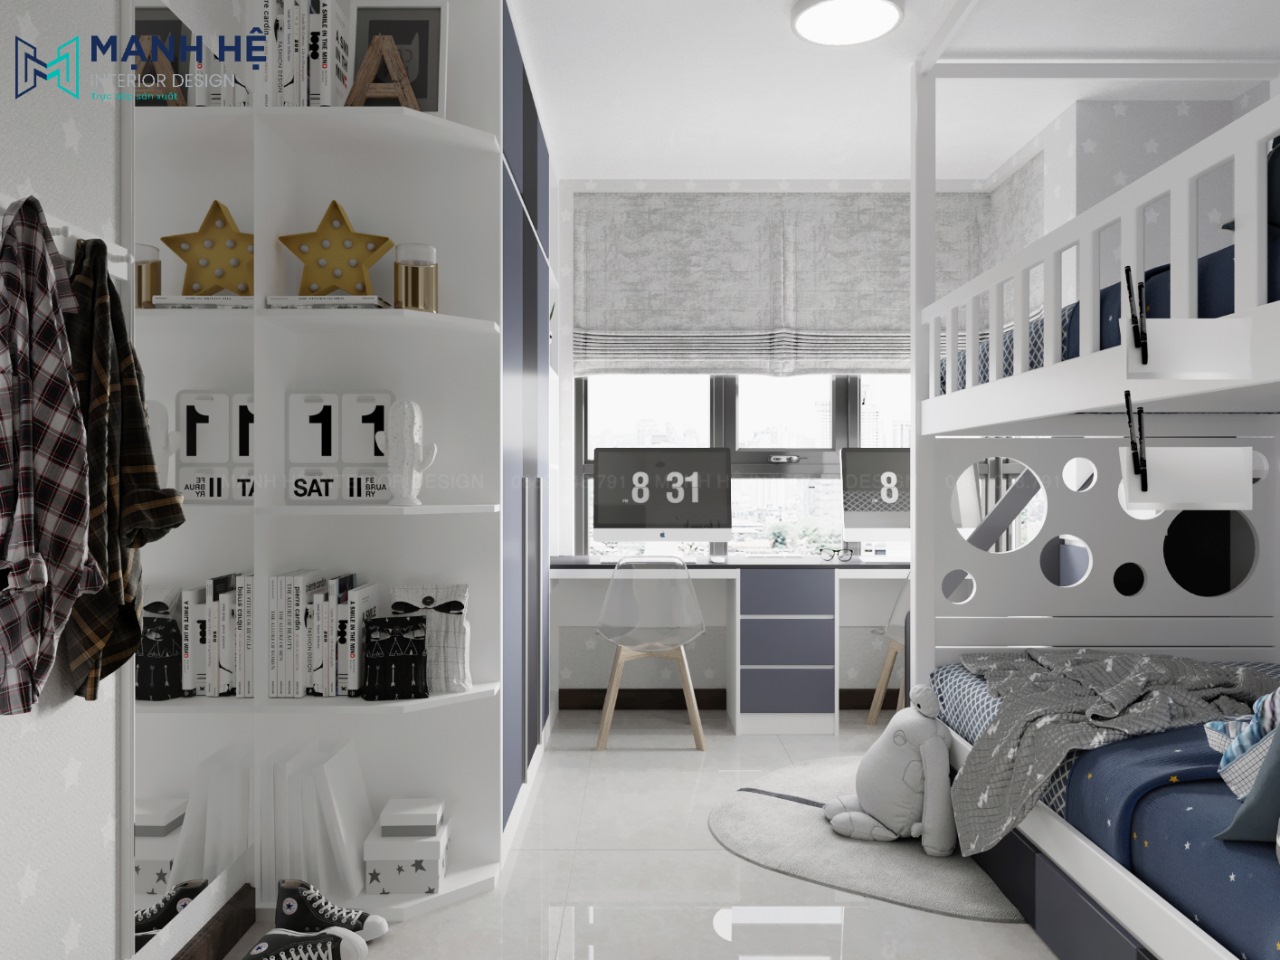 Giường tầng đẹp cho trẻ em GT005